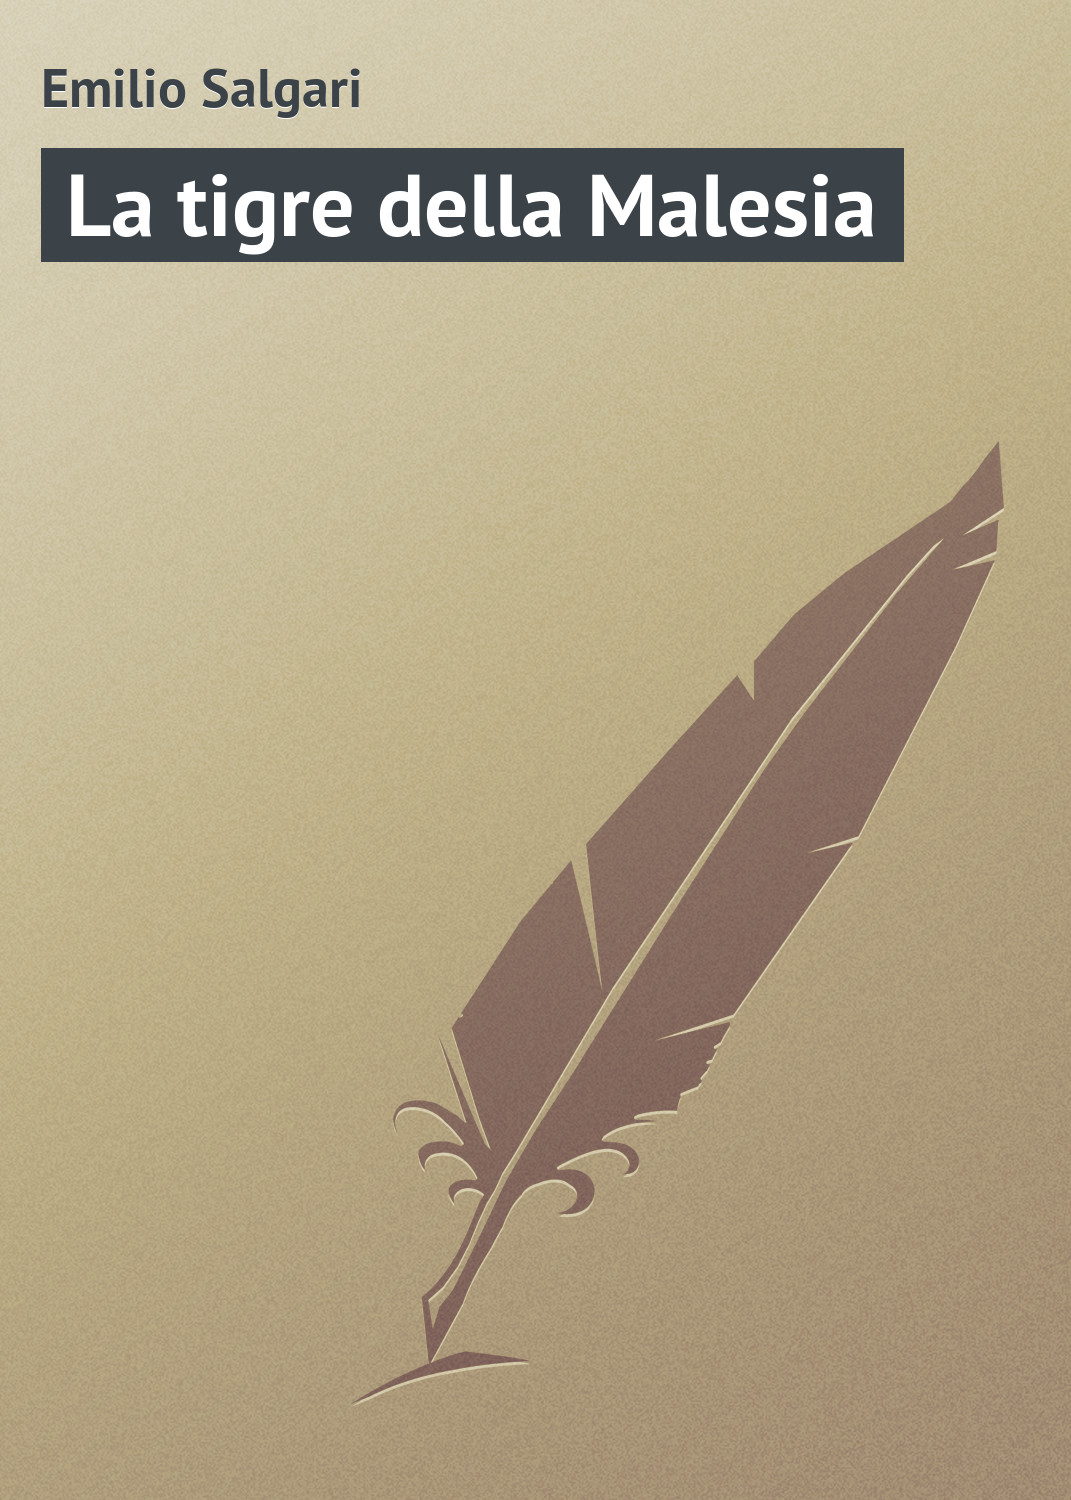 Книга La tigre della Malesia из серии , созданная Emilio Salgari, может относится к жанру Зарубежная старинная литература, Зарубежная классика. Стоимость электронной книги La tigre della Malesia с идентификатором 21104174 составляет 5.99 руб.